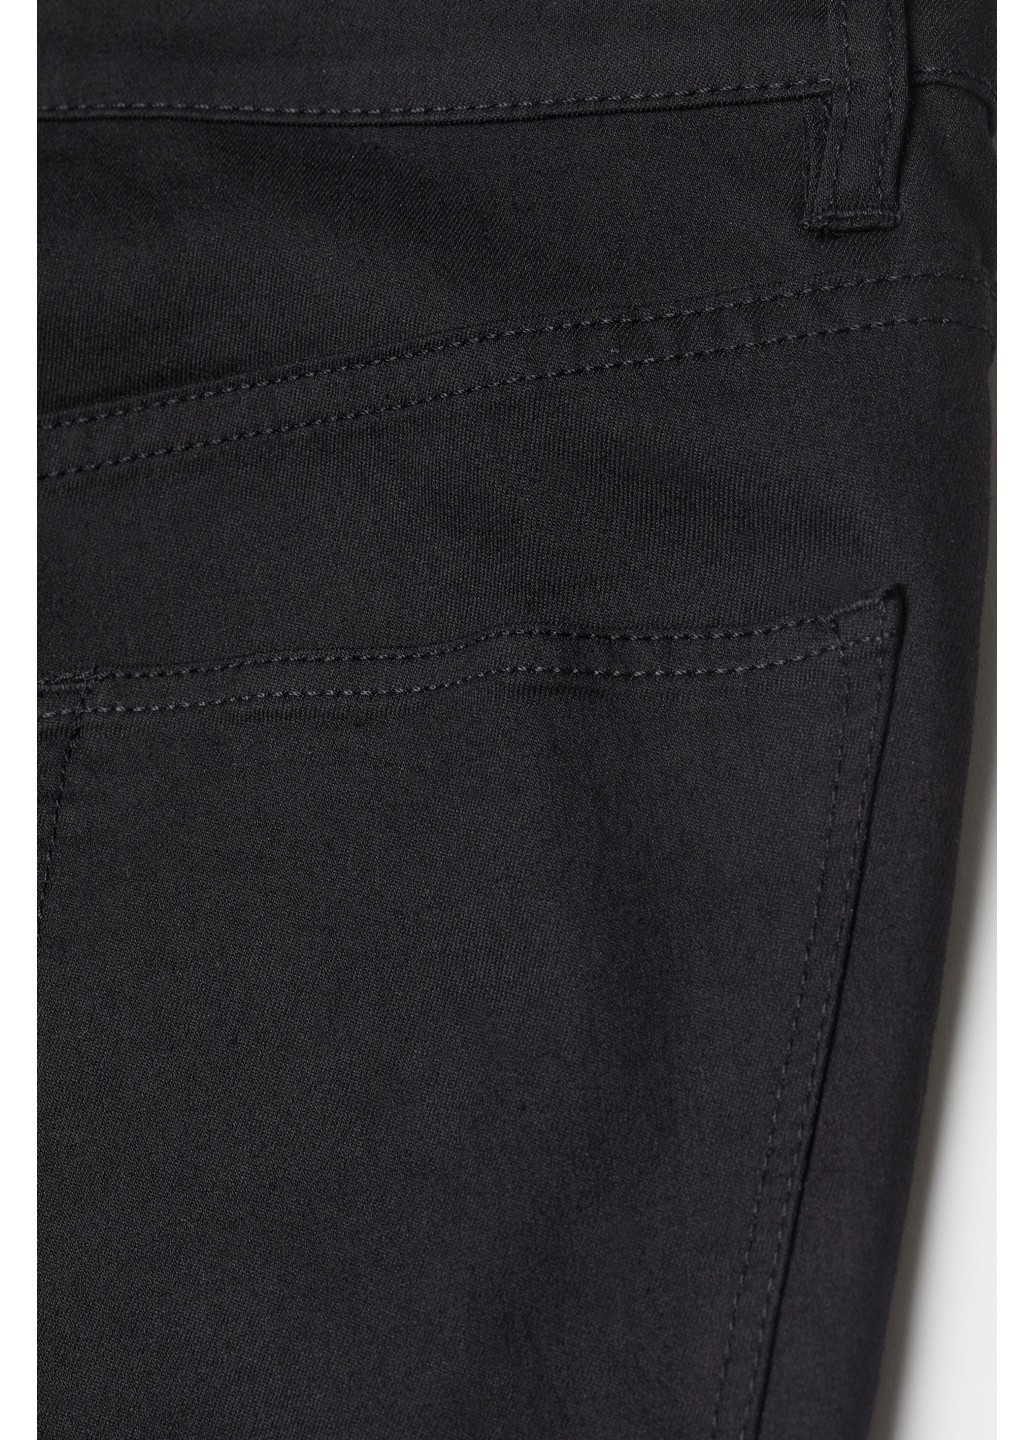 Шорты джинсовые H&M однотонные чёрные джинсовые